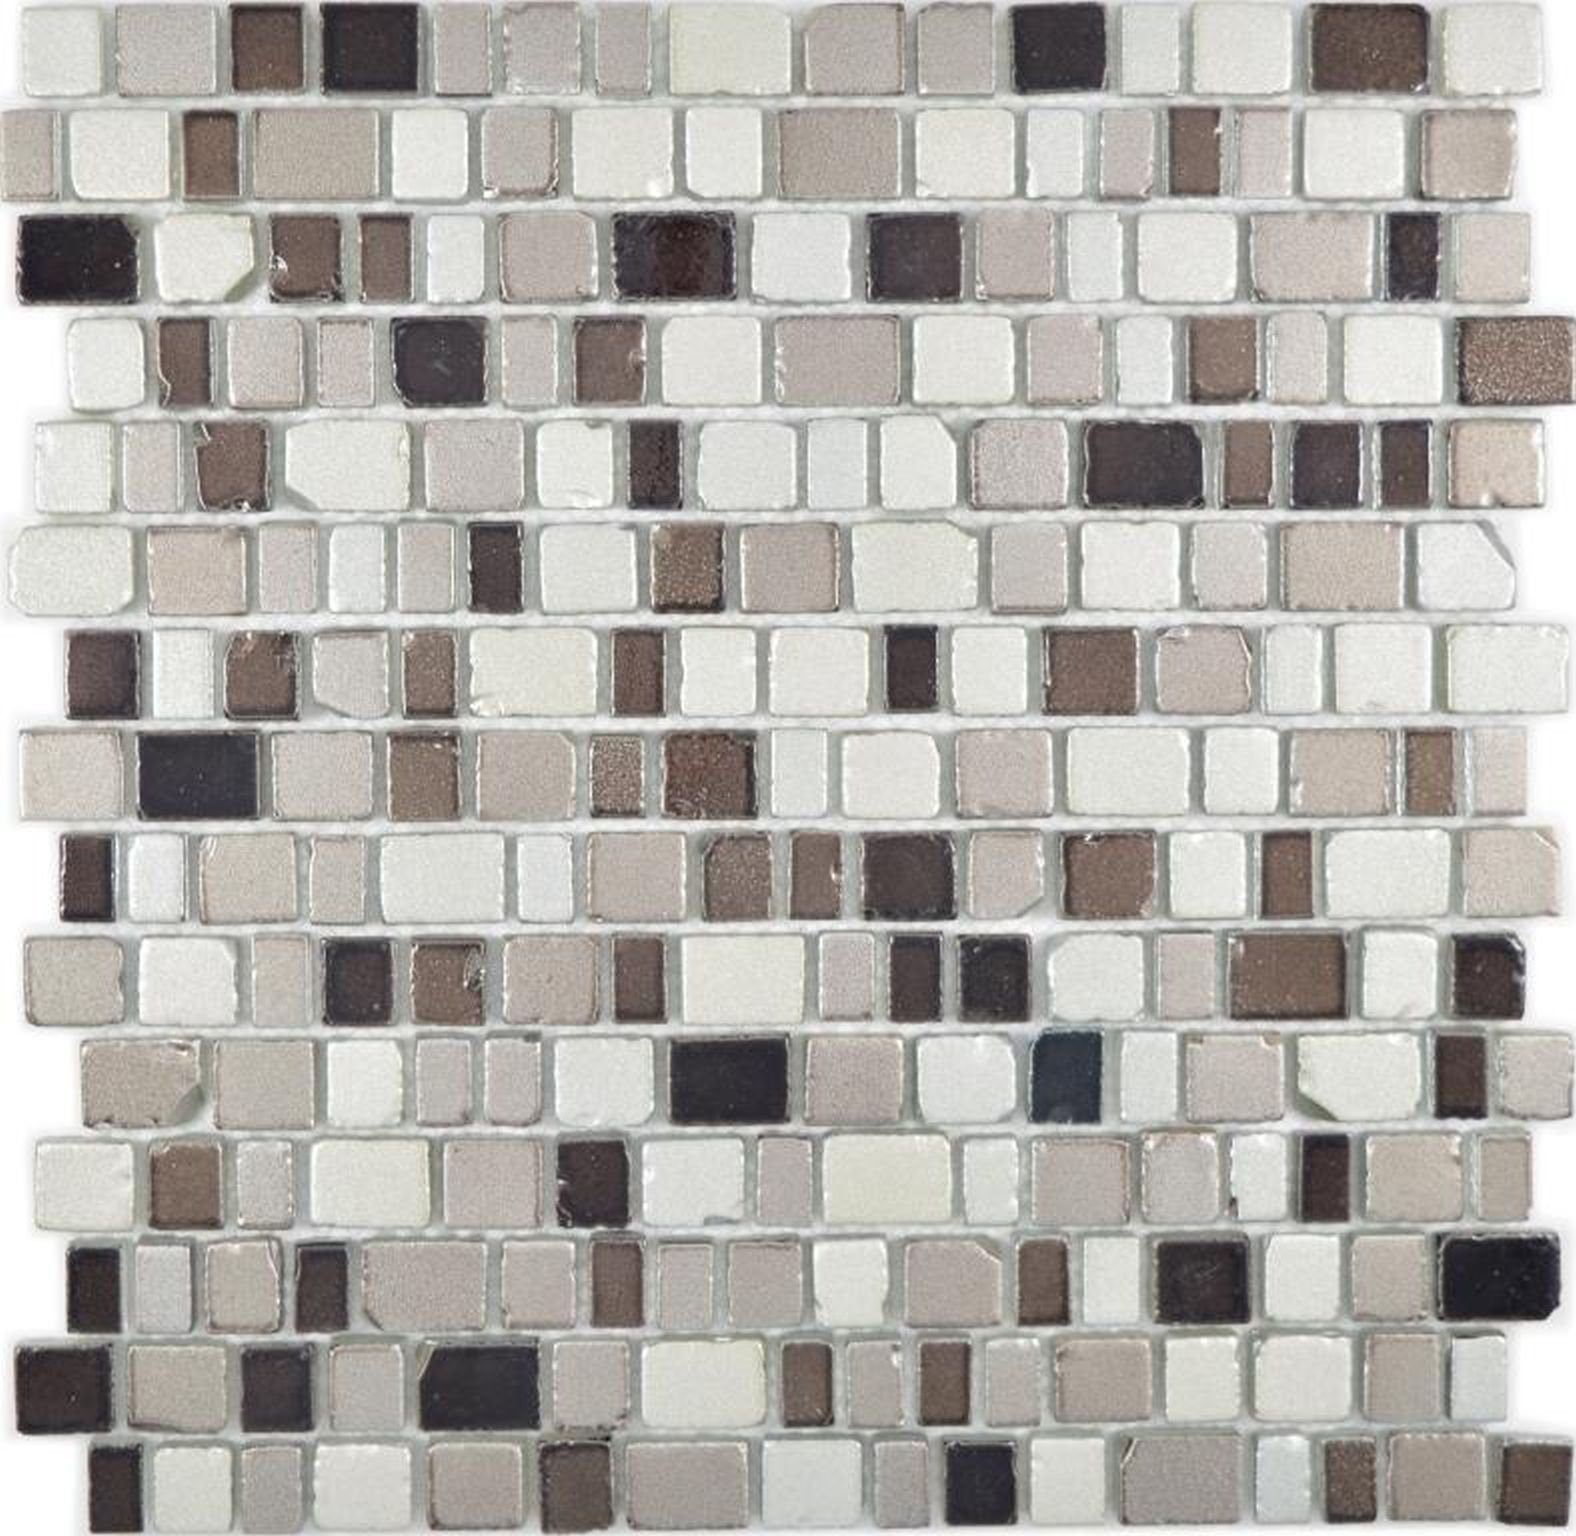 Mosani Mosaikfliesen Glasmosaik Mosaikmatte Mosaikbordüre grau beige